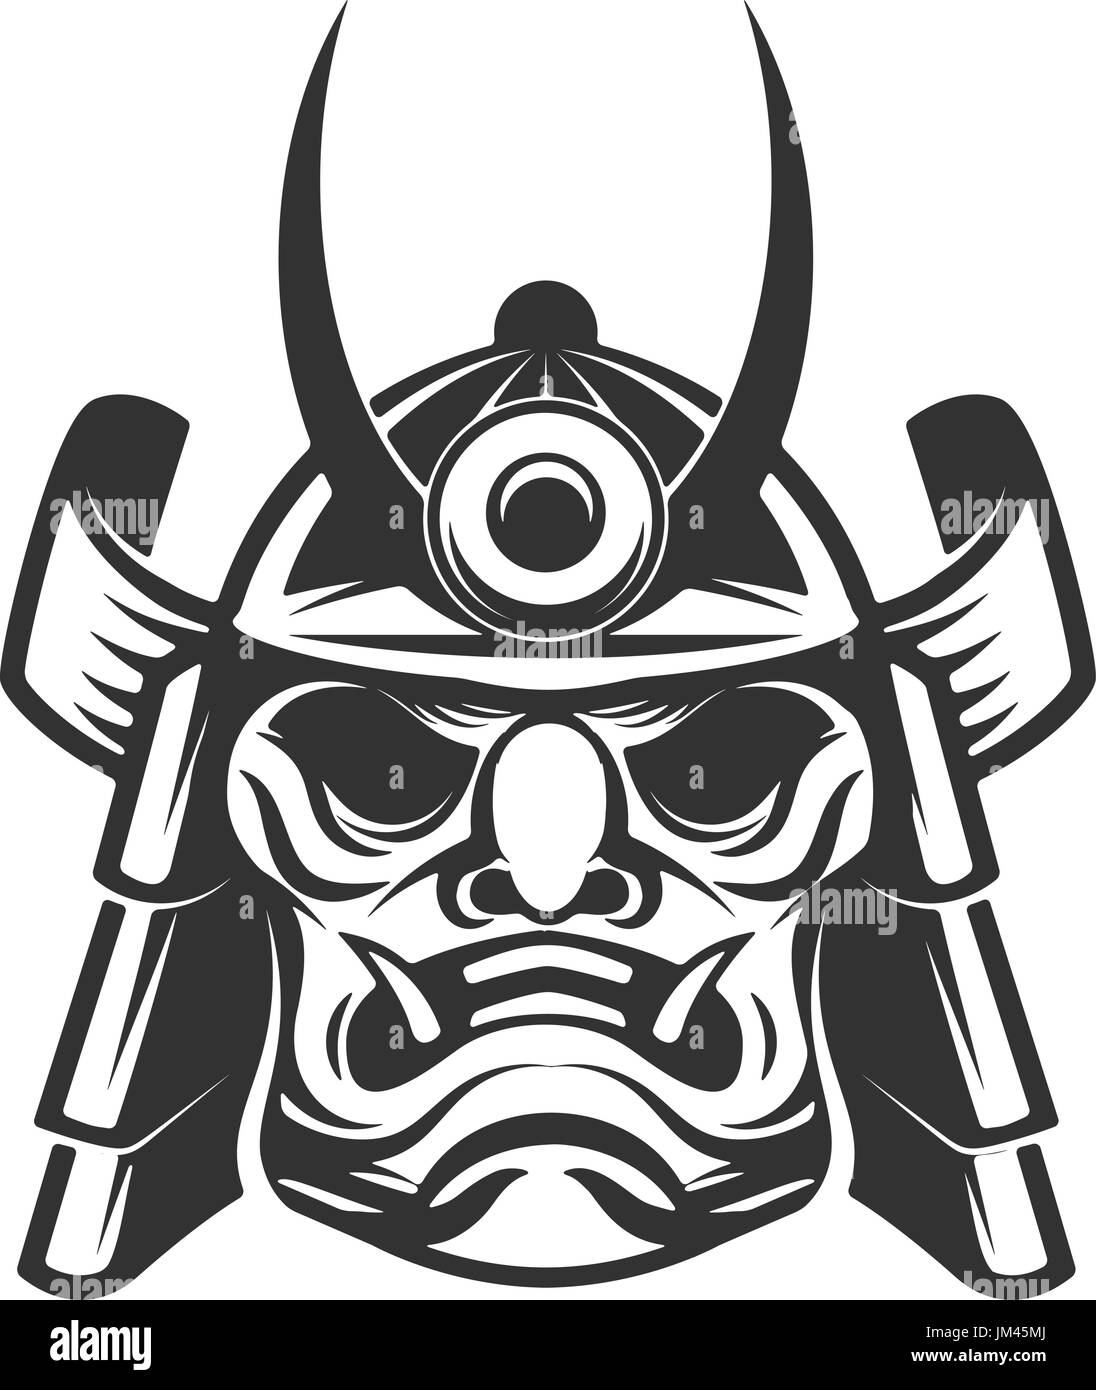 Samurai warrior helmet isolated on white background. Design elements for logo, label, emblem. Vector illustration. Stock Vector